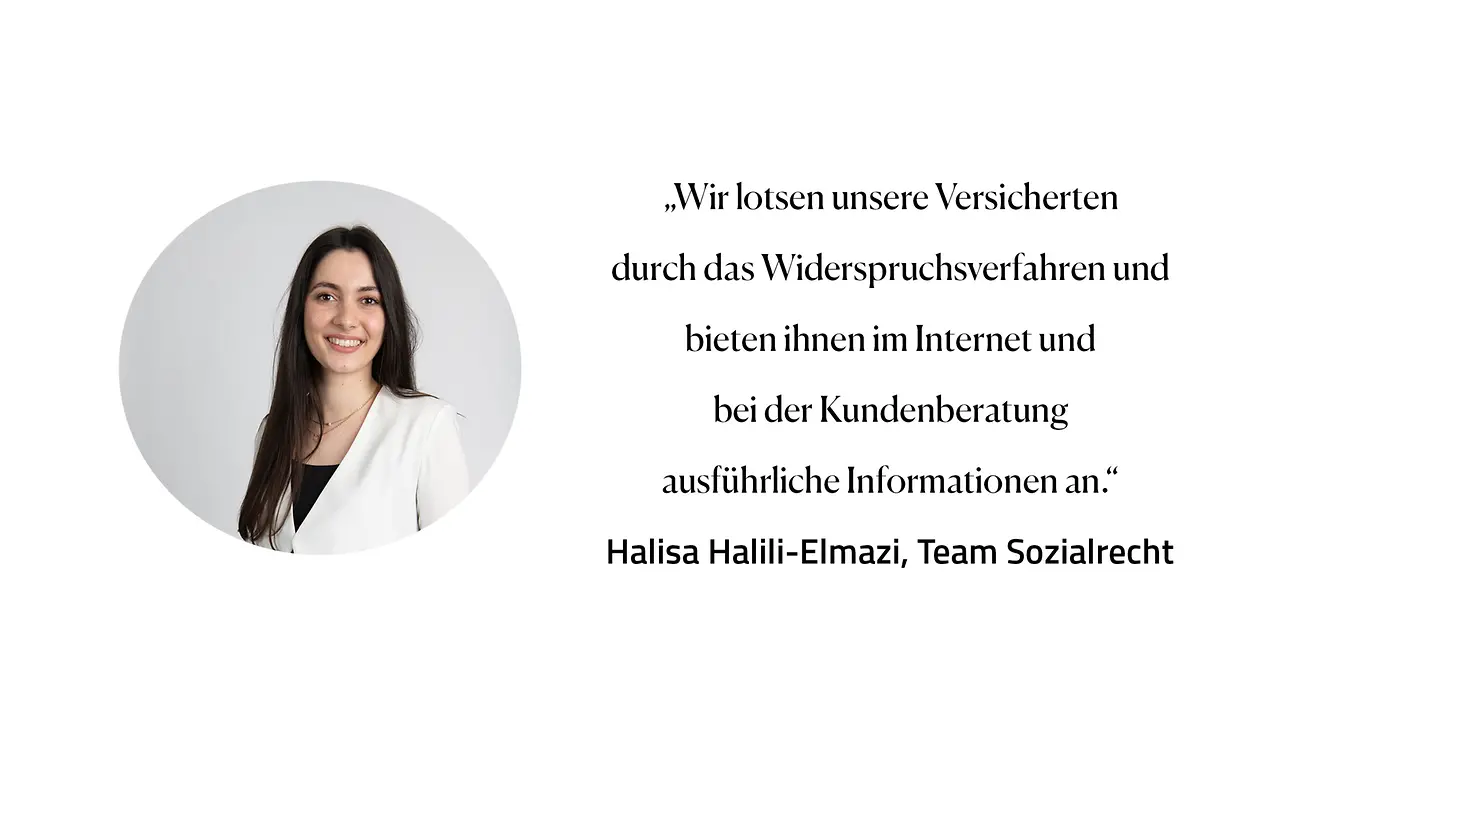 Zitat Halisa Halili-Elmazi, Team Sozialrecht: "Wir lotsen unsere Versicherten durch das Widerspruchsverfahren und bieten Ihnen im Internet und bei der Kundenberatung ausführliche Informationen an."